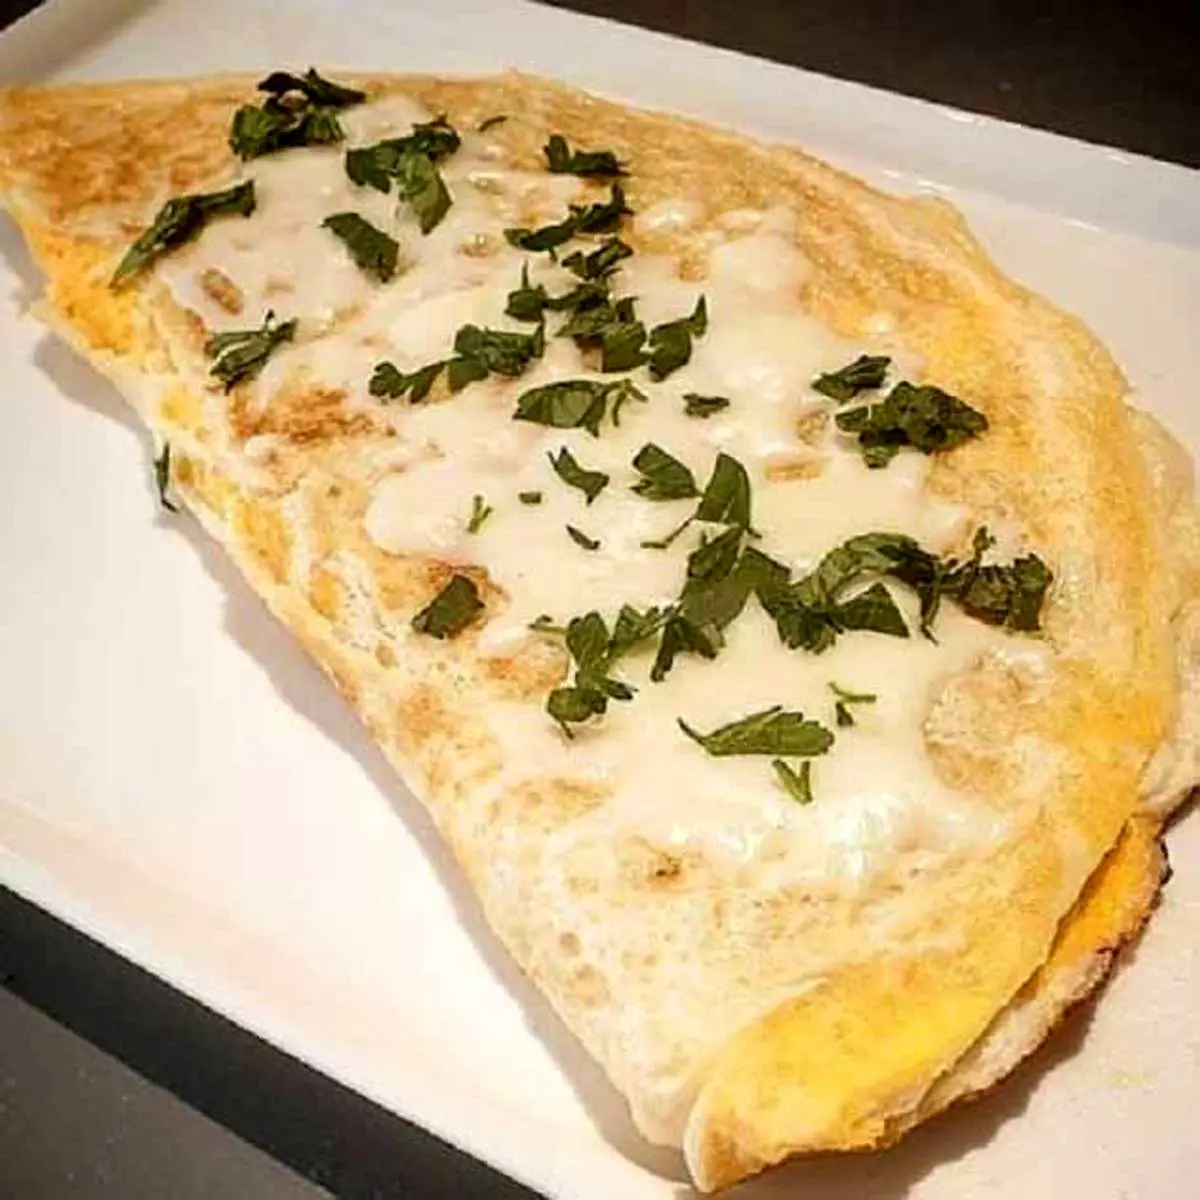 برای فرزند دانش آموزت صبحانه متنوع درست کن | طرز تهیه املت پنیر ترکیه ای